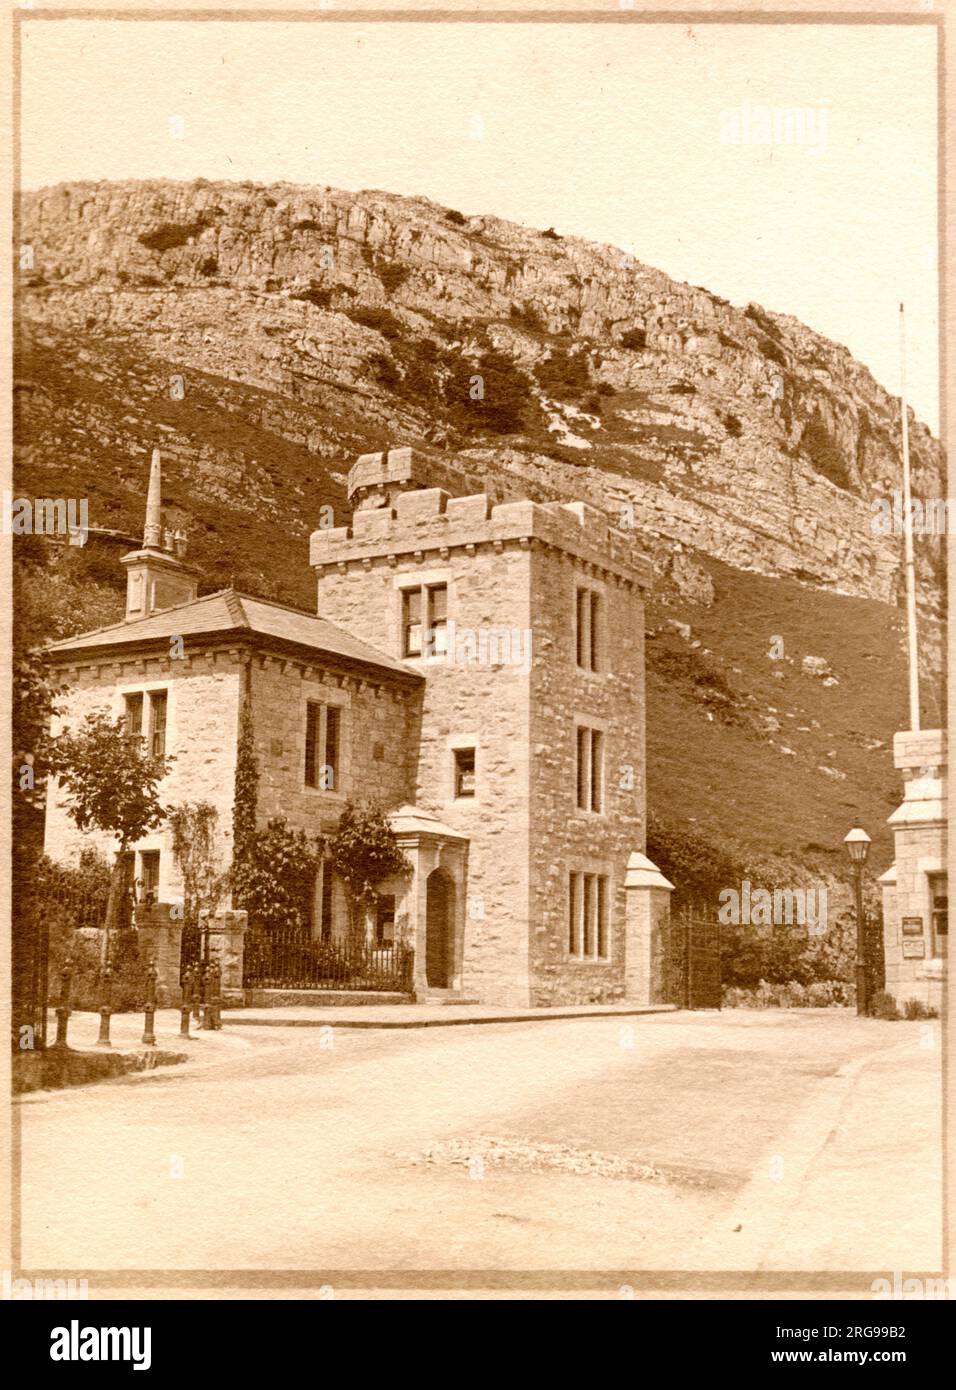 Tollgate House (West Shore Lodge Gate), Marine Drive, Llandudno, pays de Galles du Nord, avec des falaises au-dessus. Banque D'Images